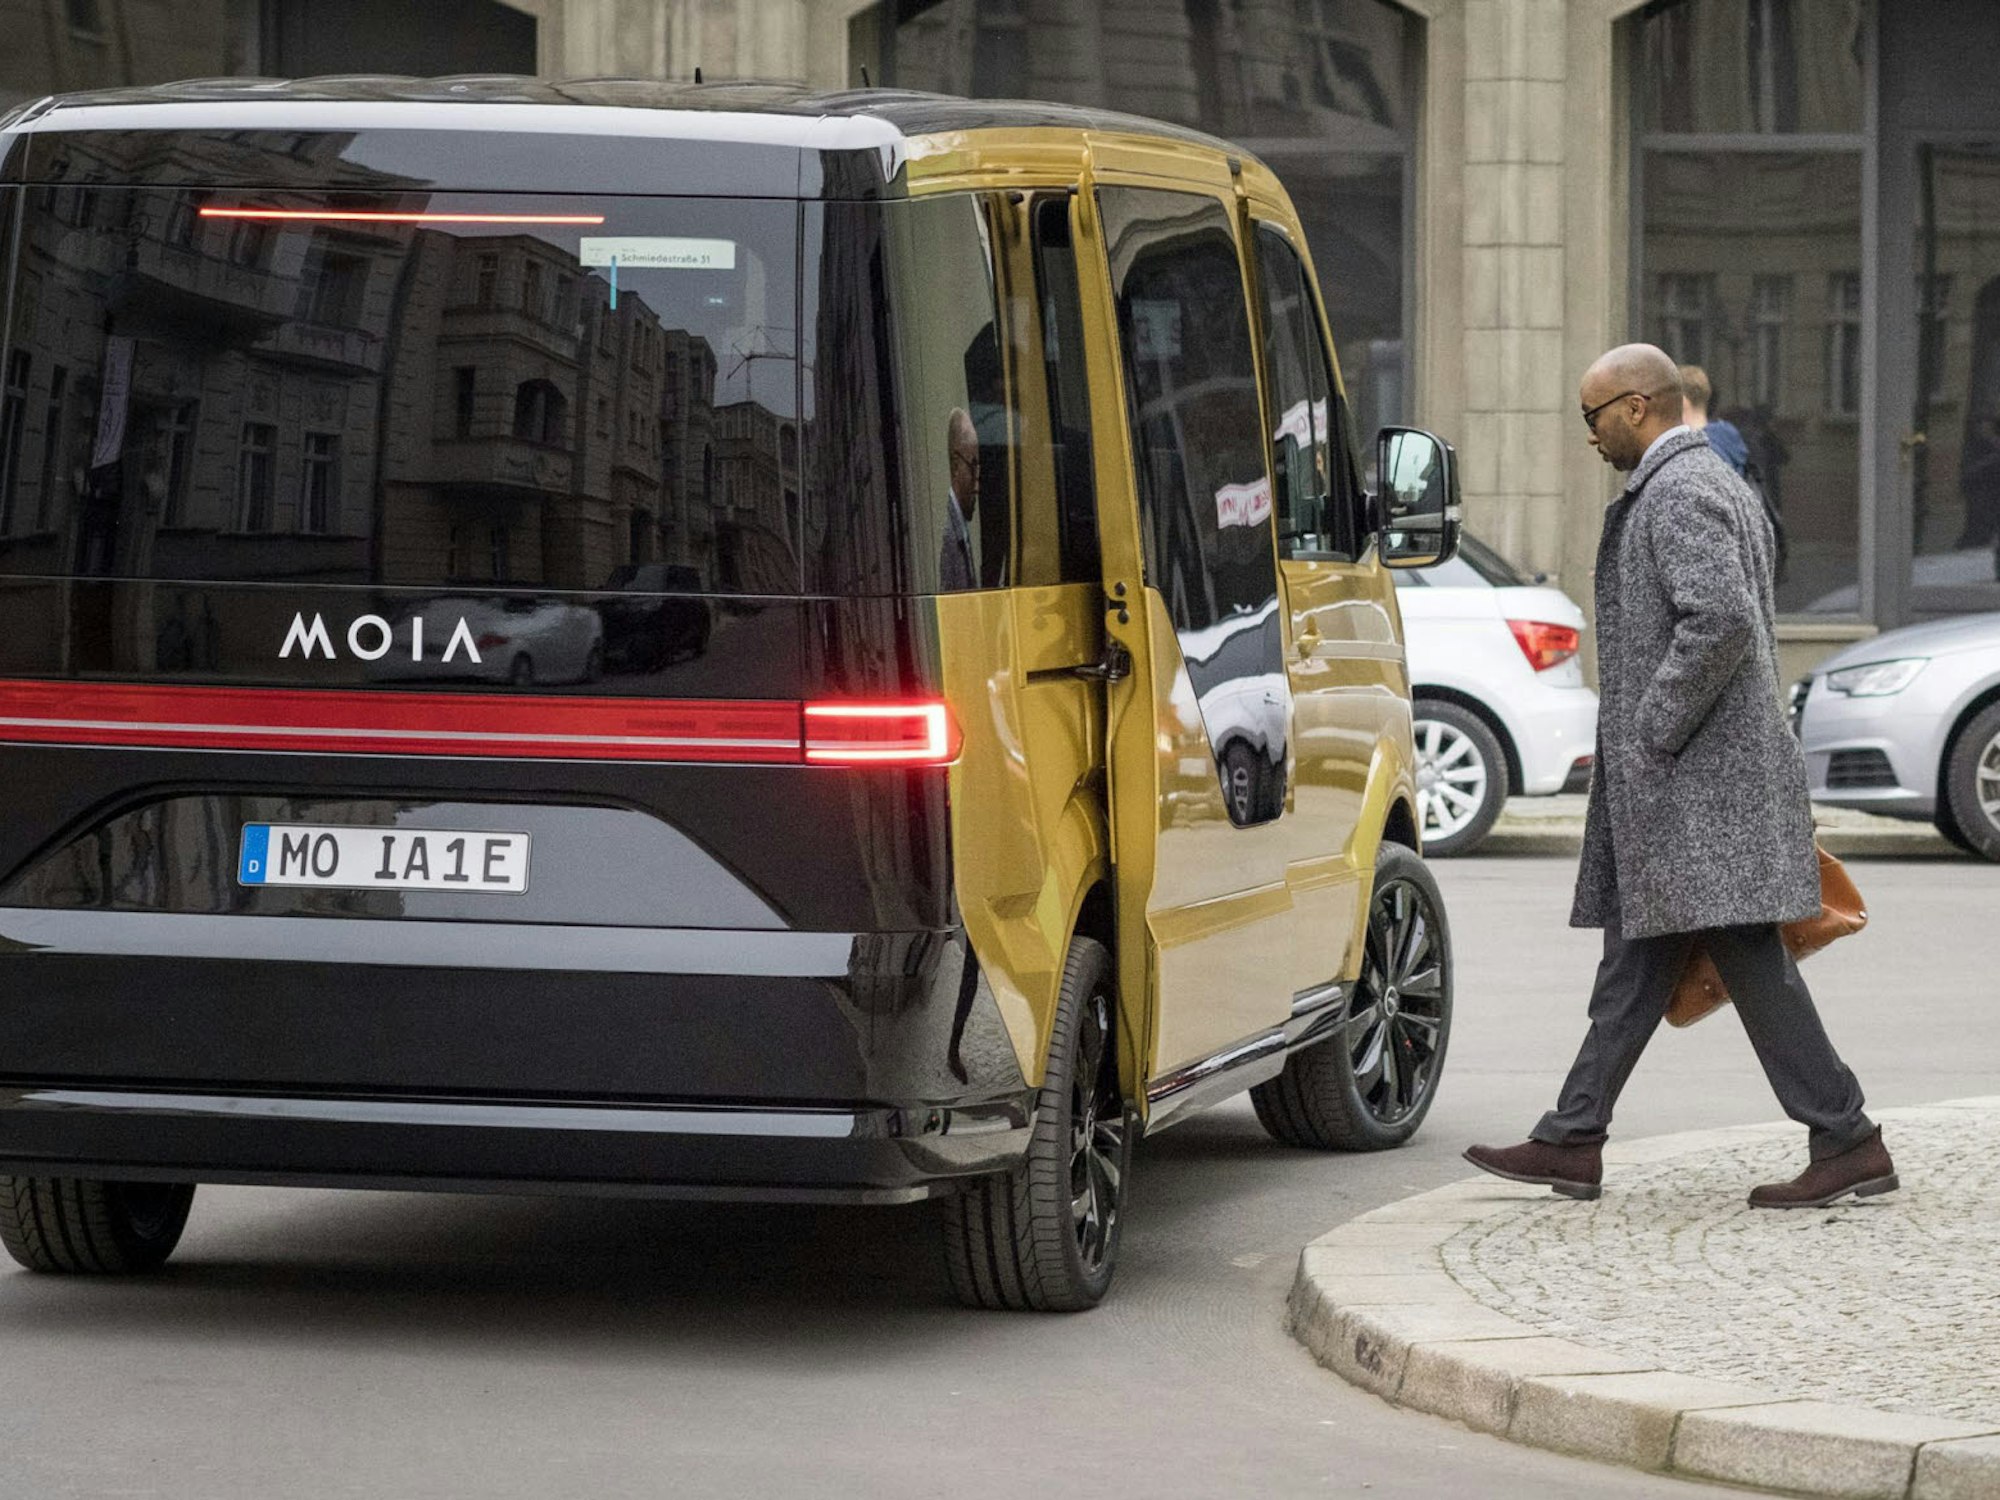 Einen elektrischen Minibus, der bis zu sechs Fahrgästen Platz gibt, bietet die Volkswagen-Tochter Moia für den öffentlichen Nahverkehr an.